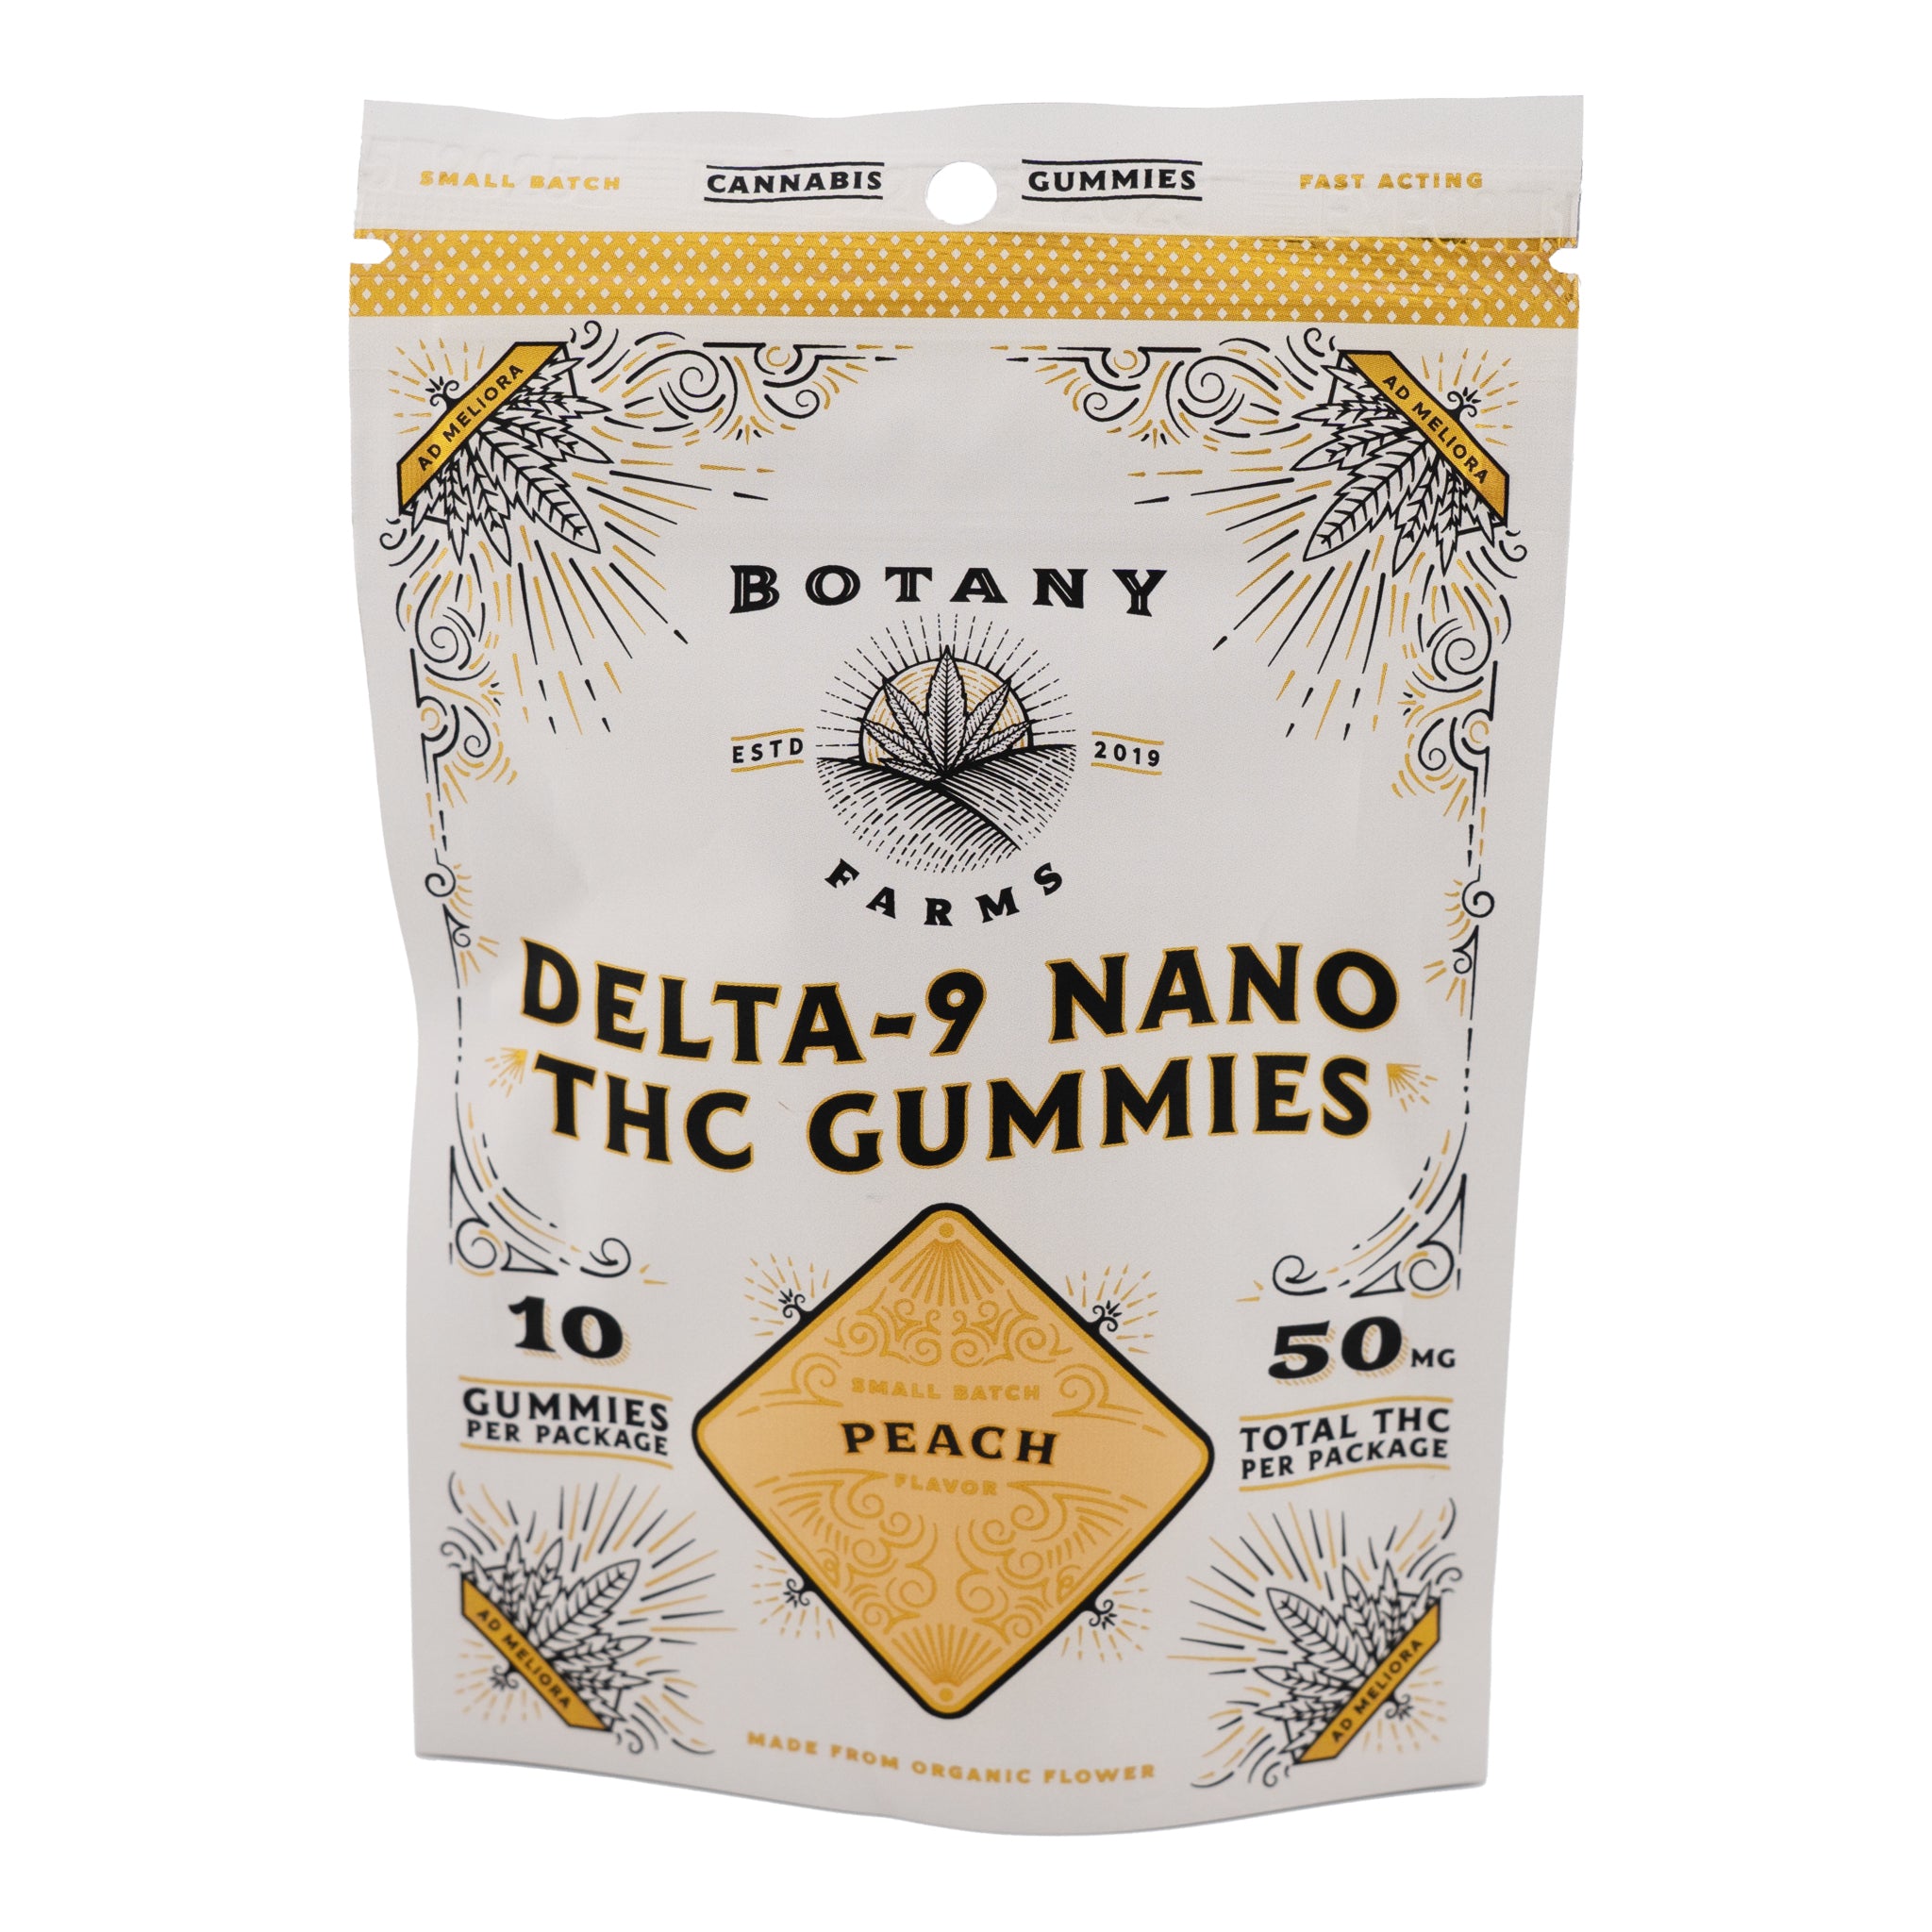 BOTANY FARMS Nano THC Gummies 50mg THC (4 Flavors)